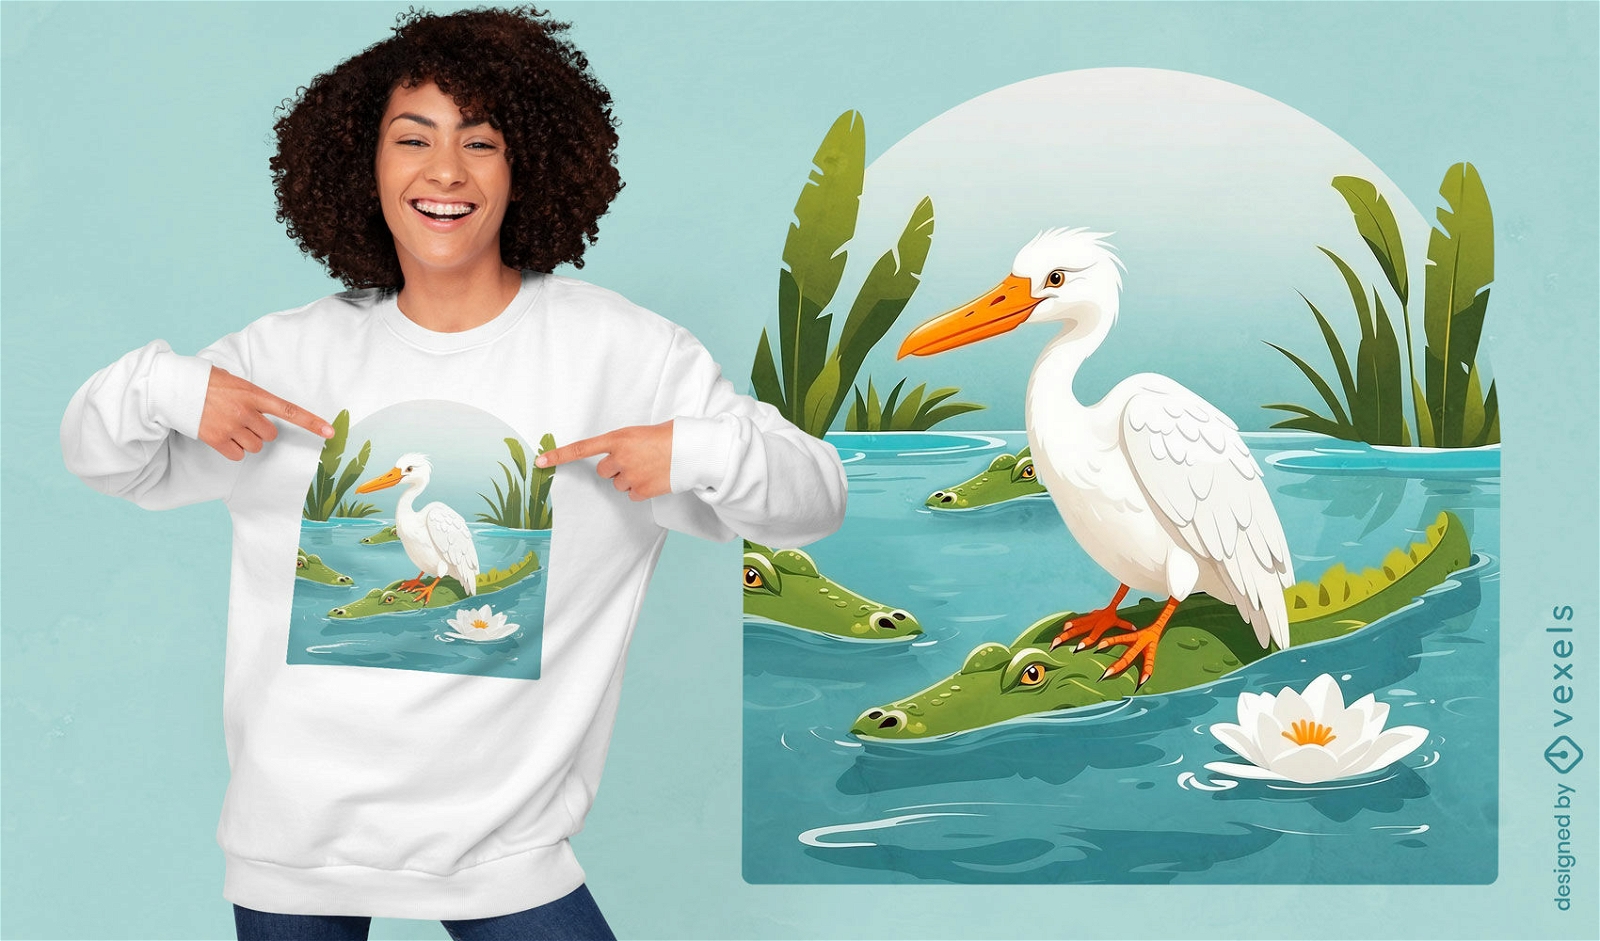 Diseño de camiseta de vida silvestre y aves.